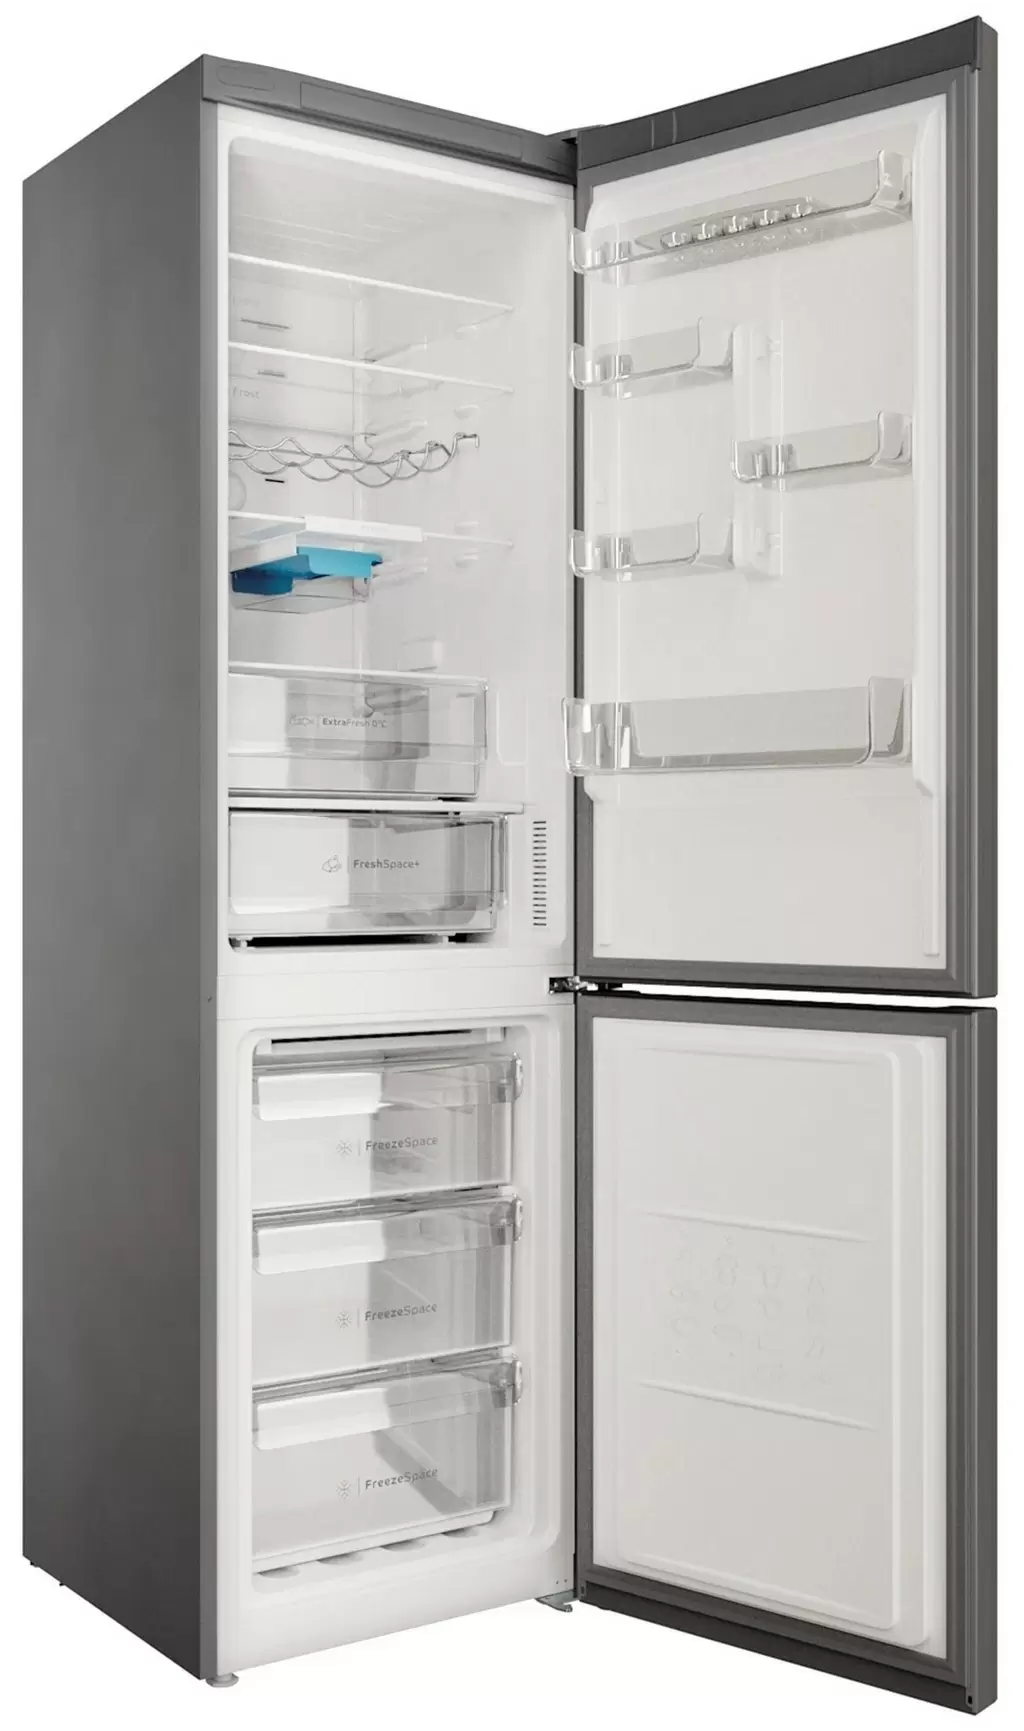 Холодильник Indesit INFC9 TO32X, нержавеющая сталь